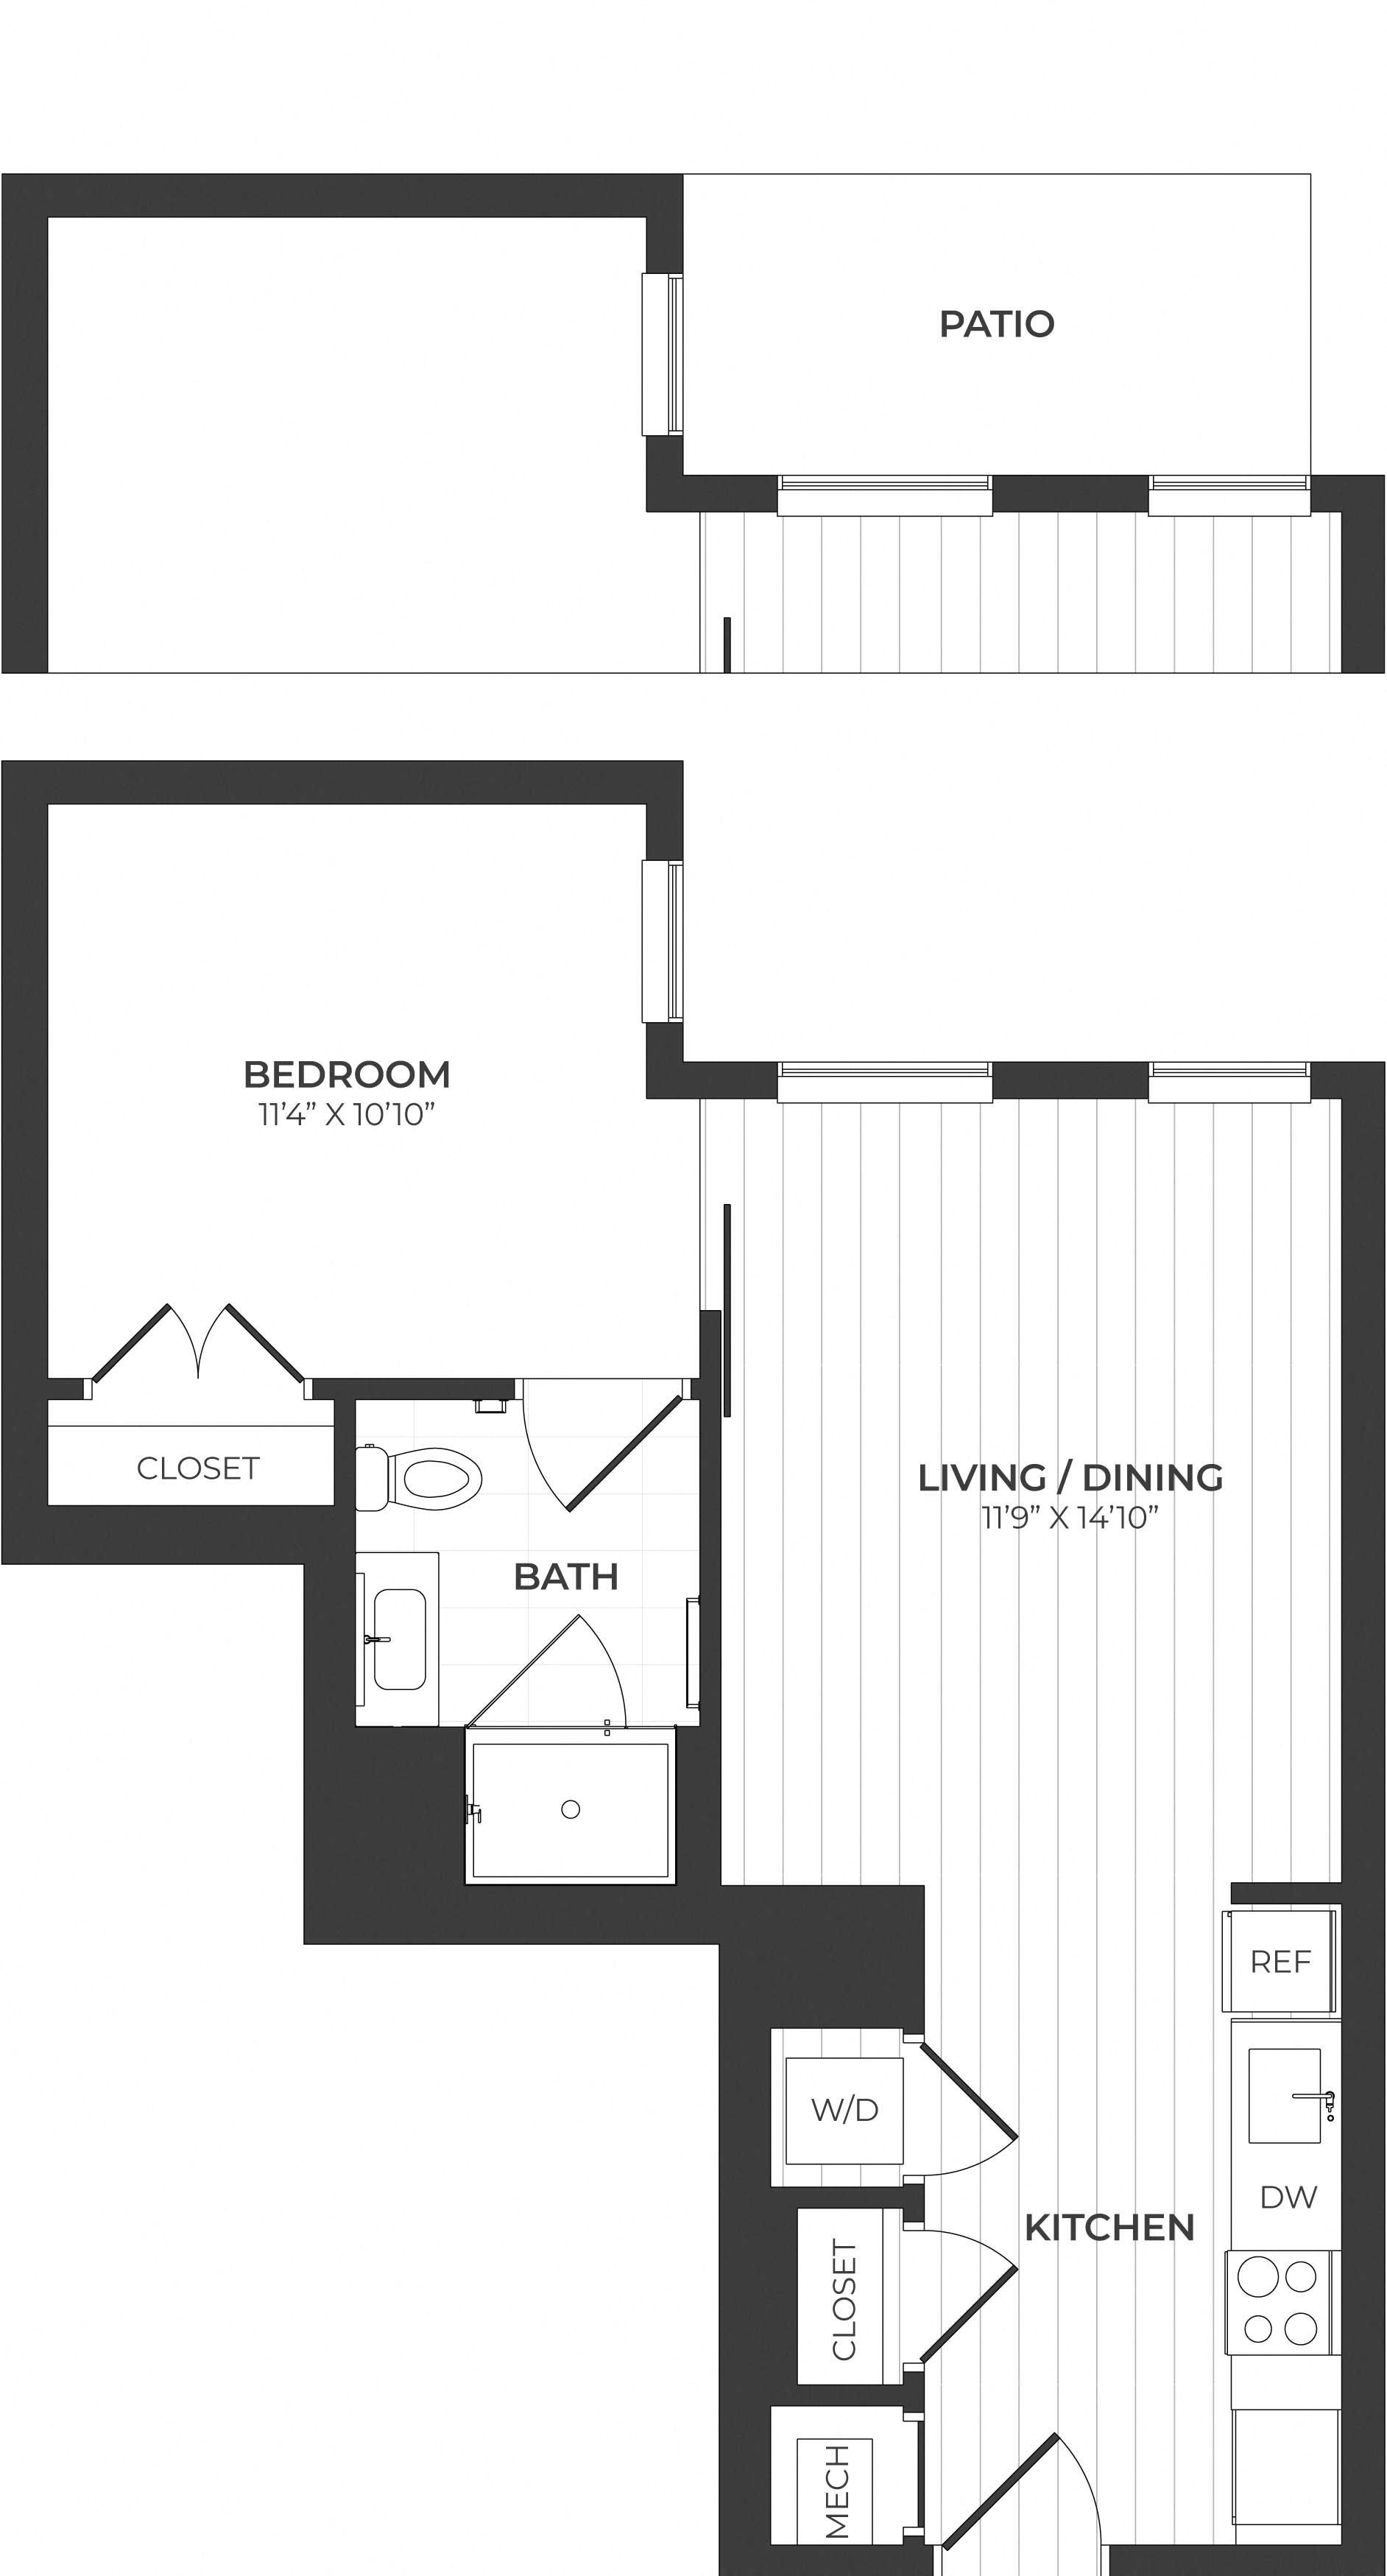 floorplan image of apartment C605